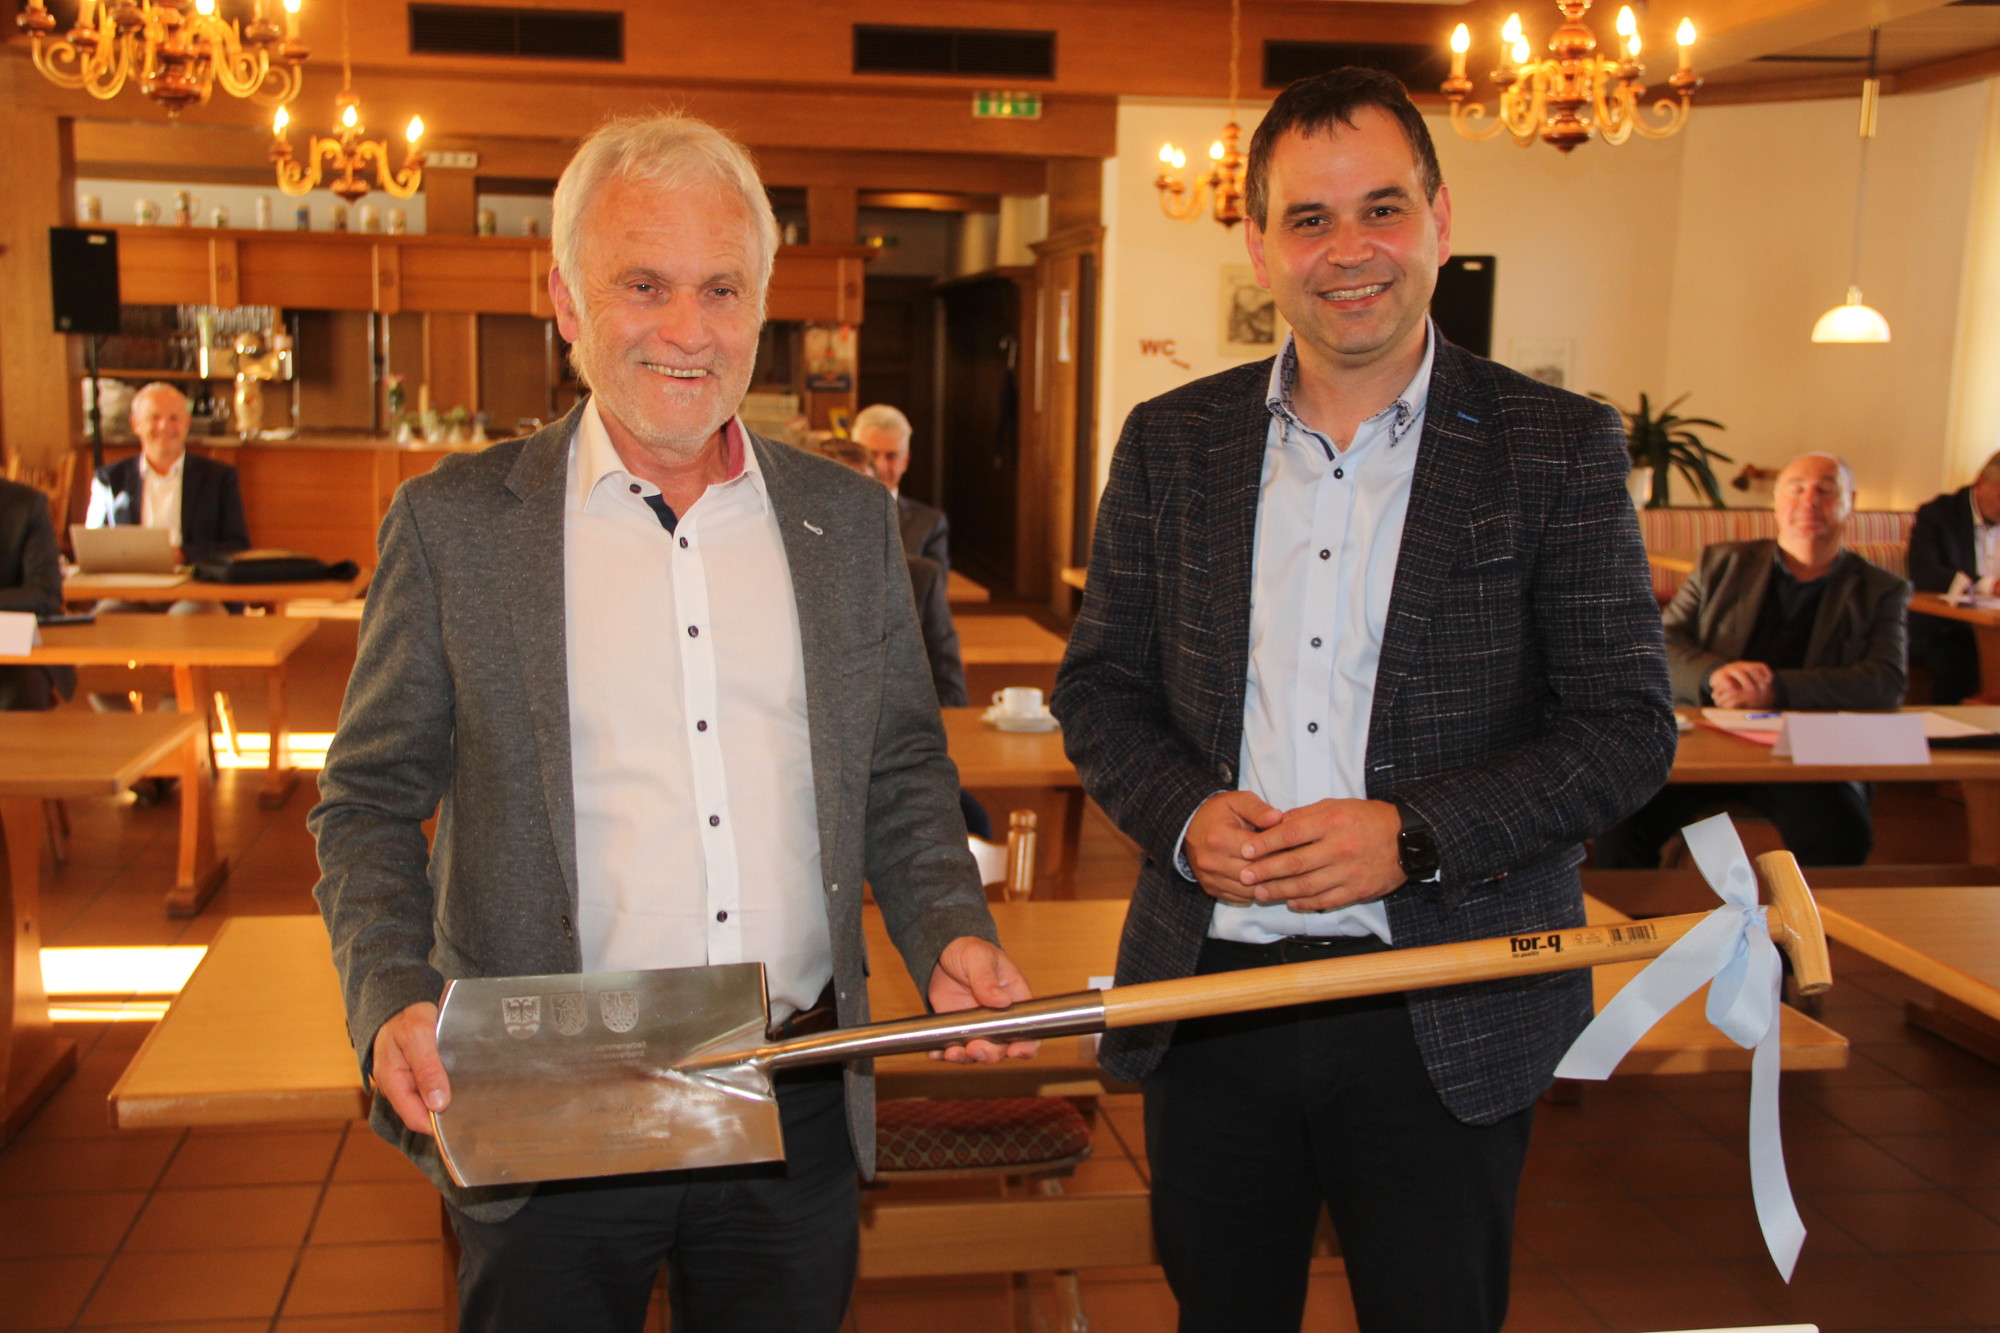 Als Dank und Erinnerung an die gute Zusammenarbeit überreichte Passaus Landrat Raimund Kneidinger an Robert Wufka einen Spaten mit dem Signum des Vorsitzenden des Zweckverbandes